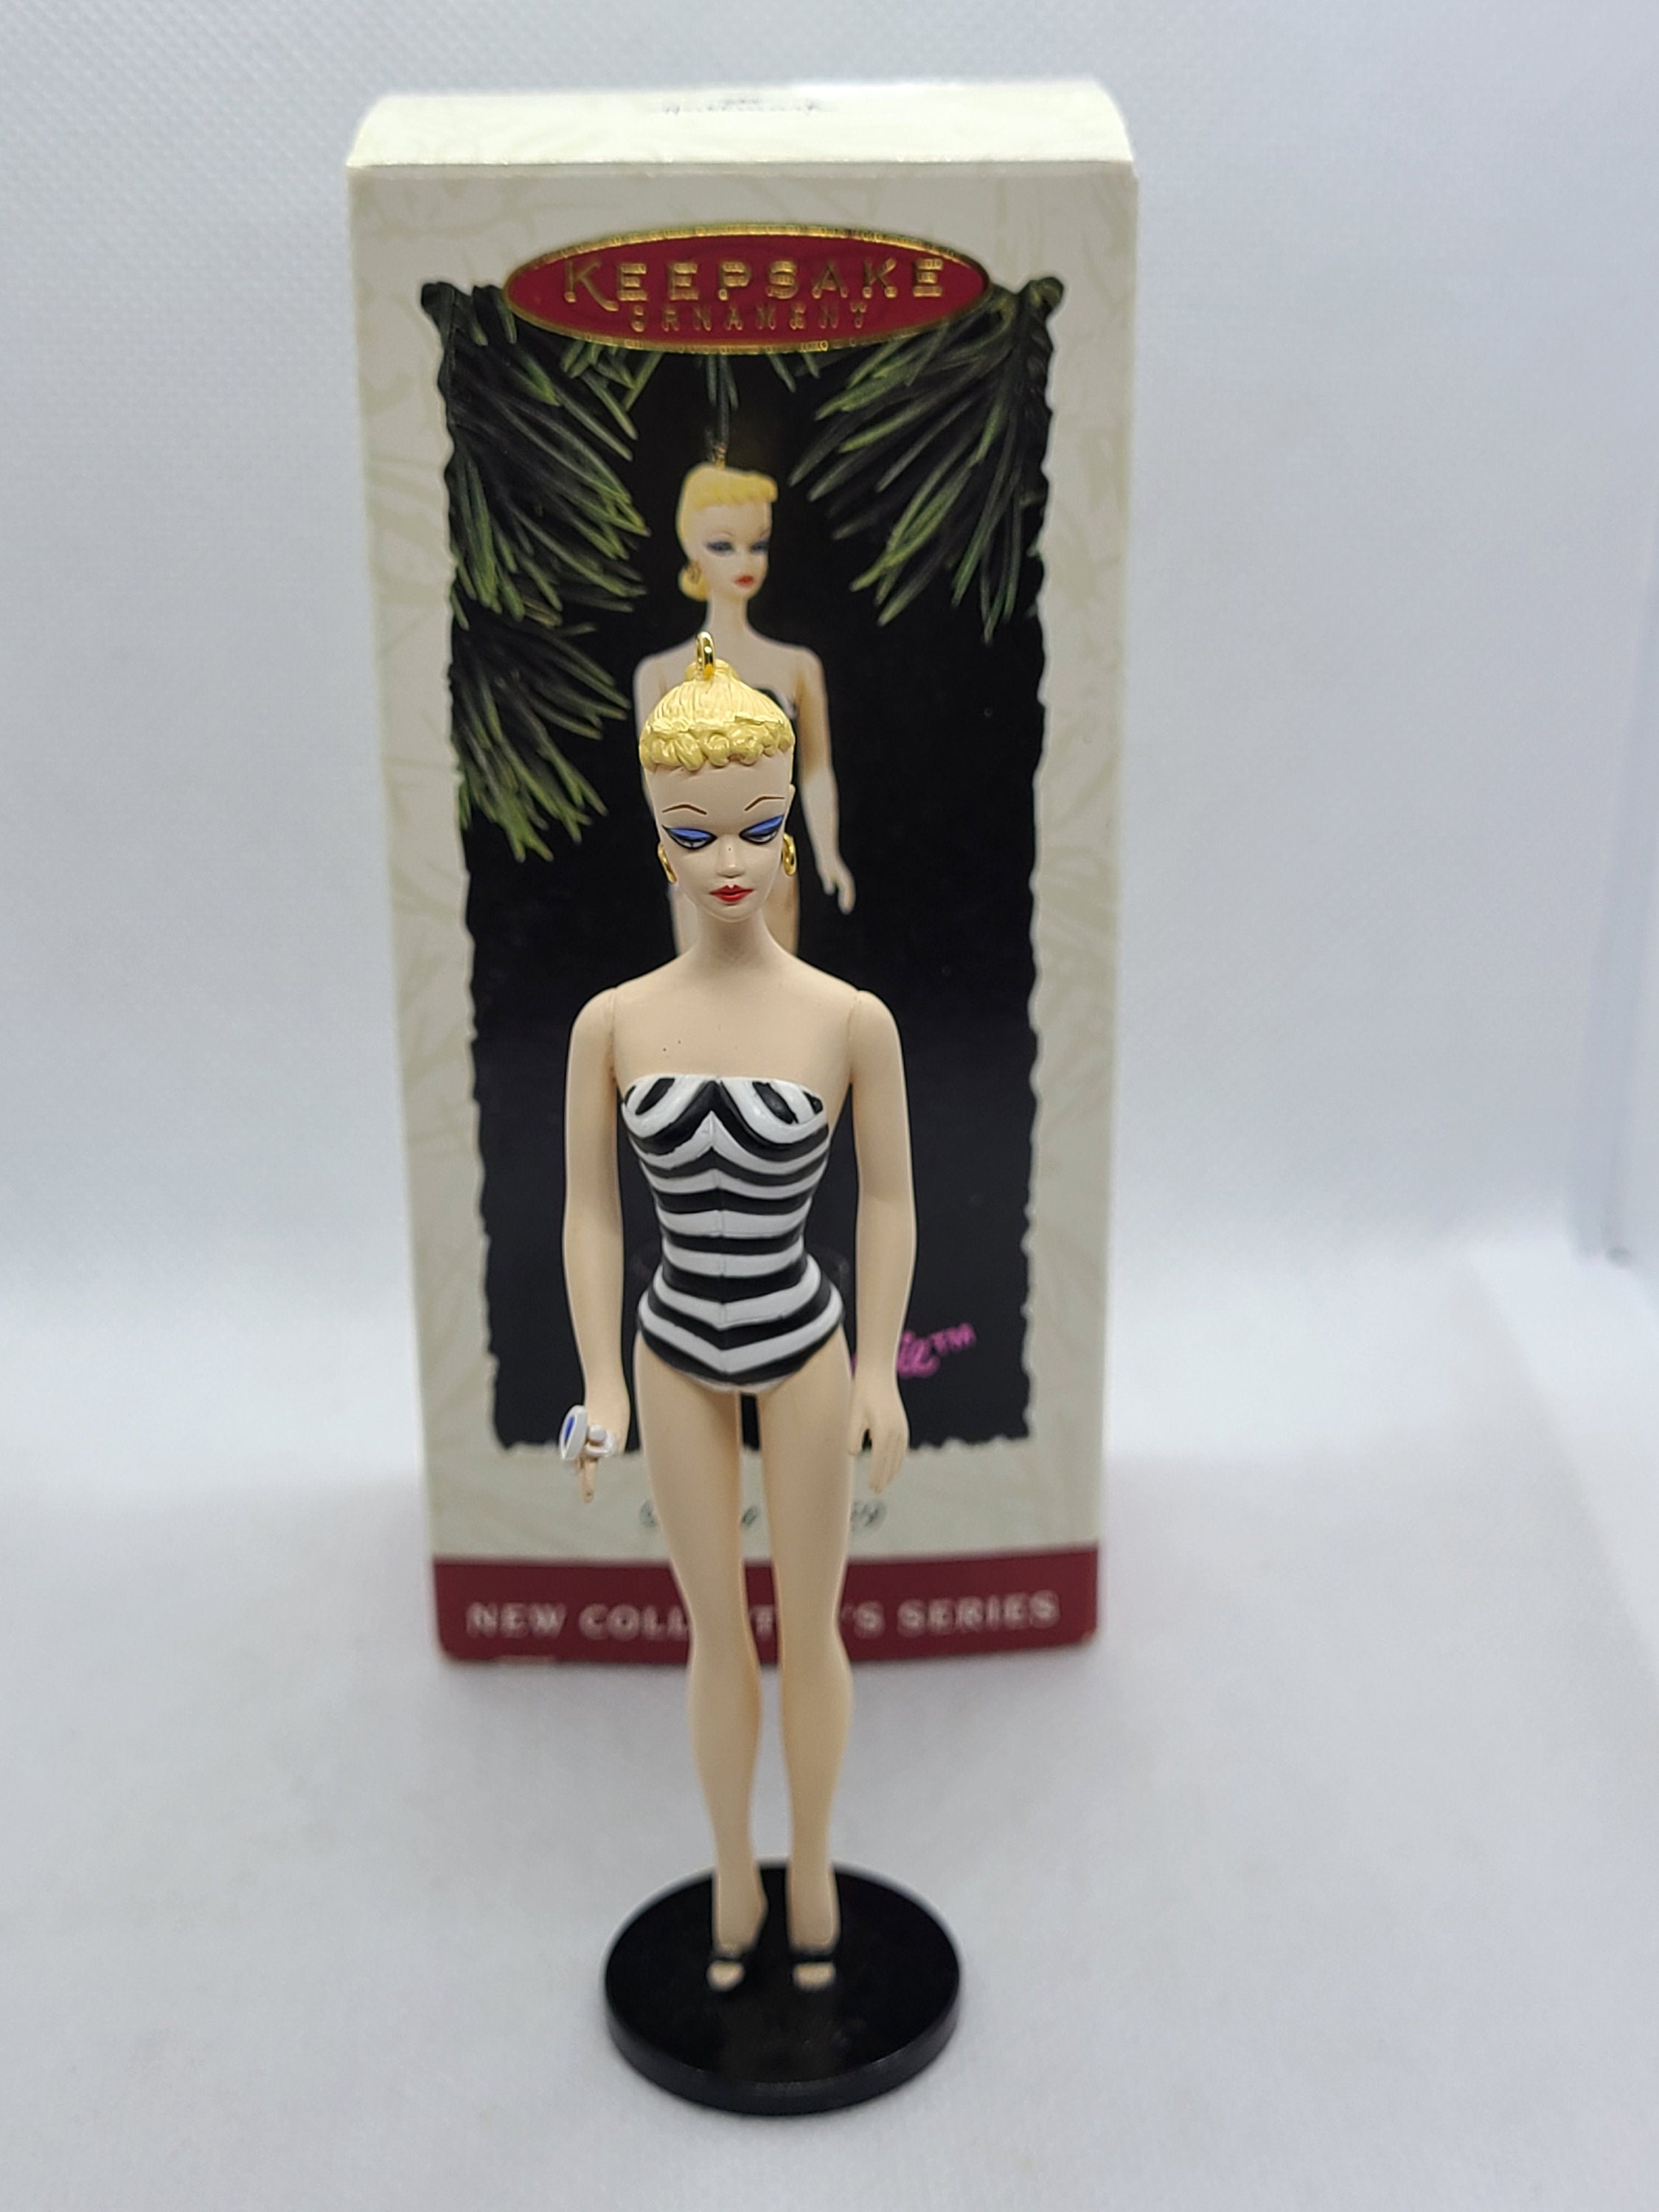 Vintage Hallmark Keepsake Ornament Barbie Debut 1959.